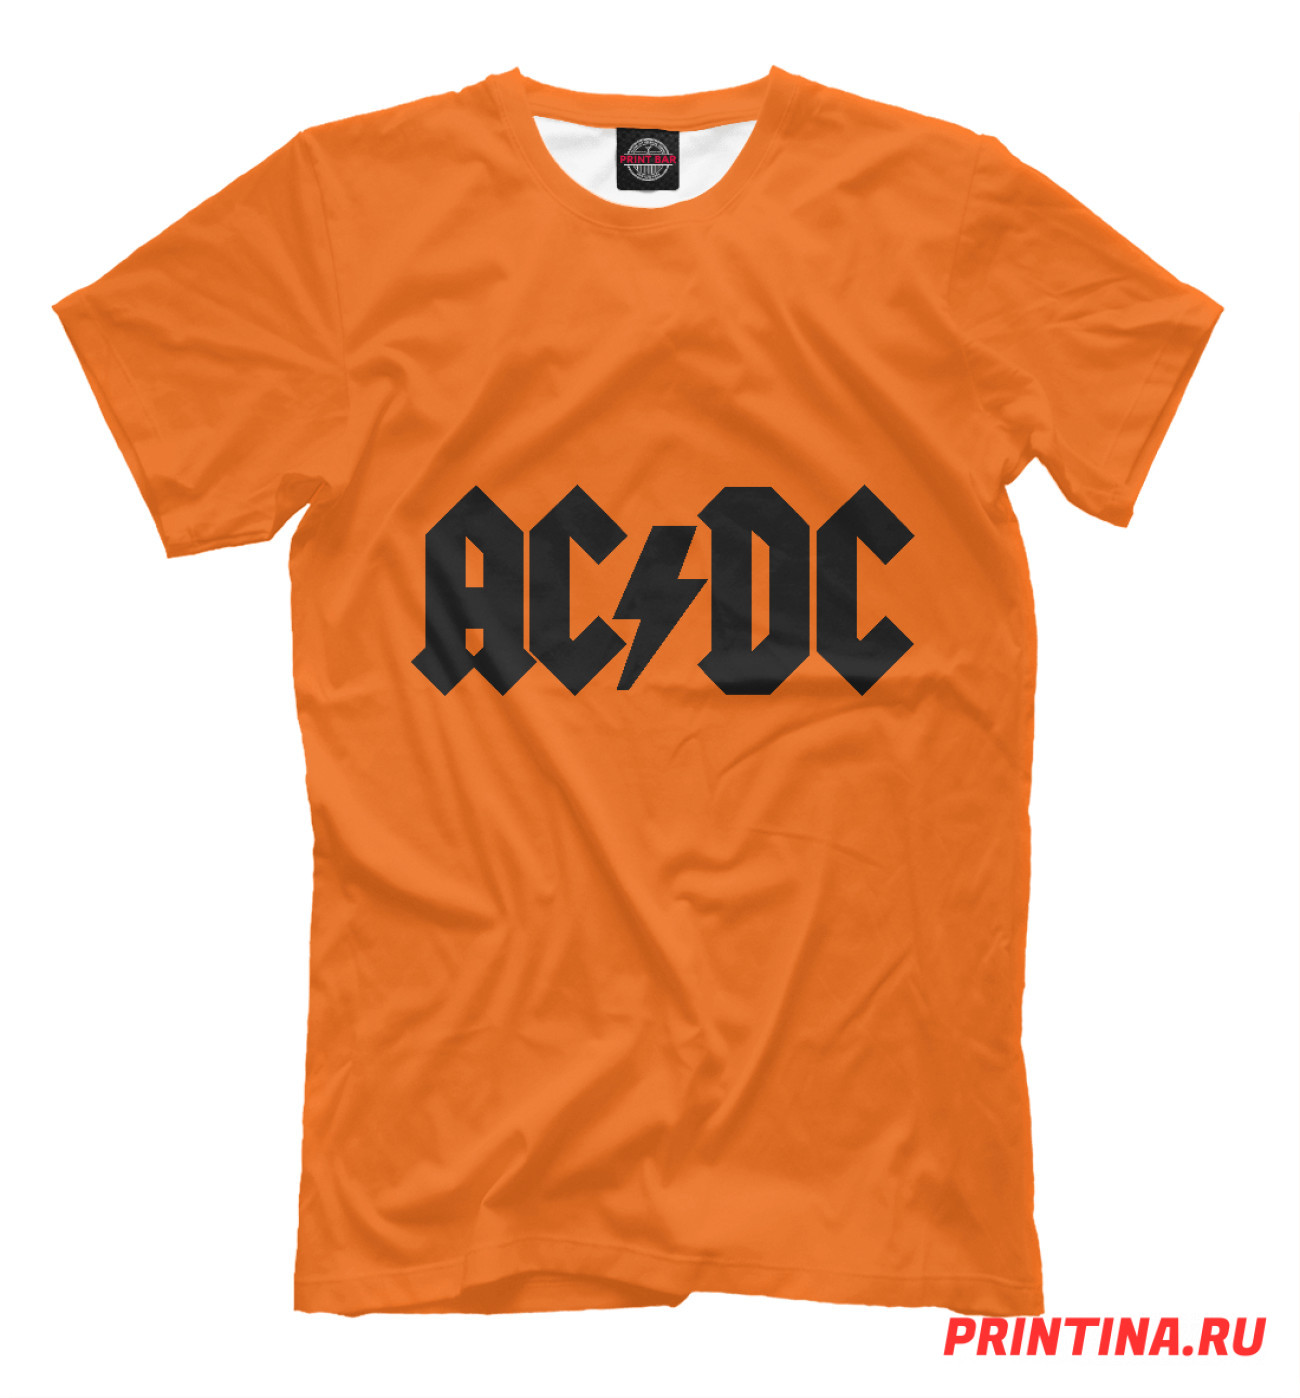 Мужская Футболка AC/DC, артикул: ACD-729549-fut-2